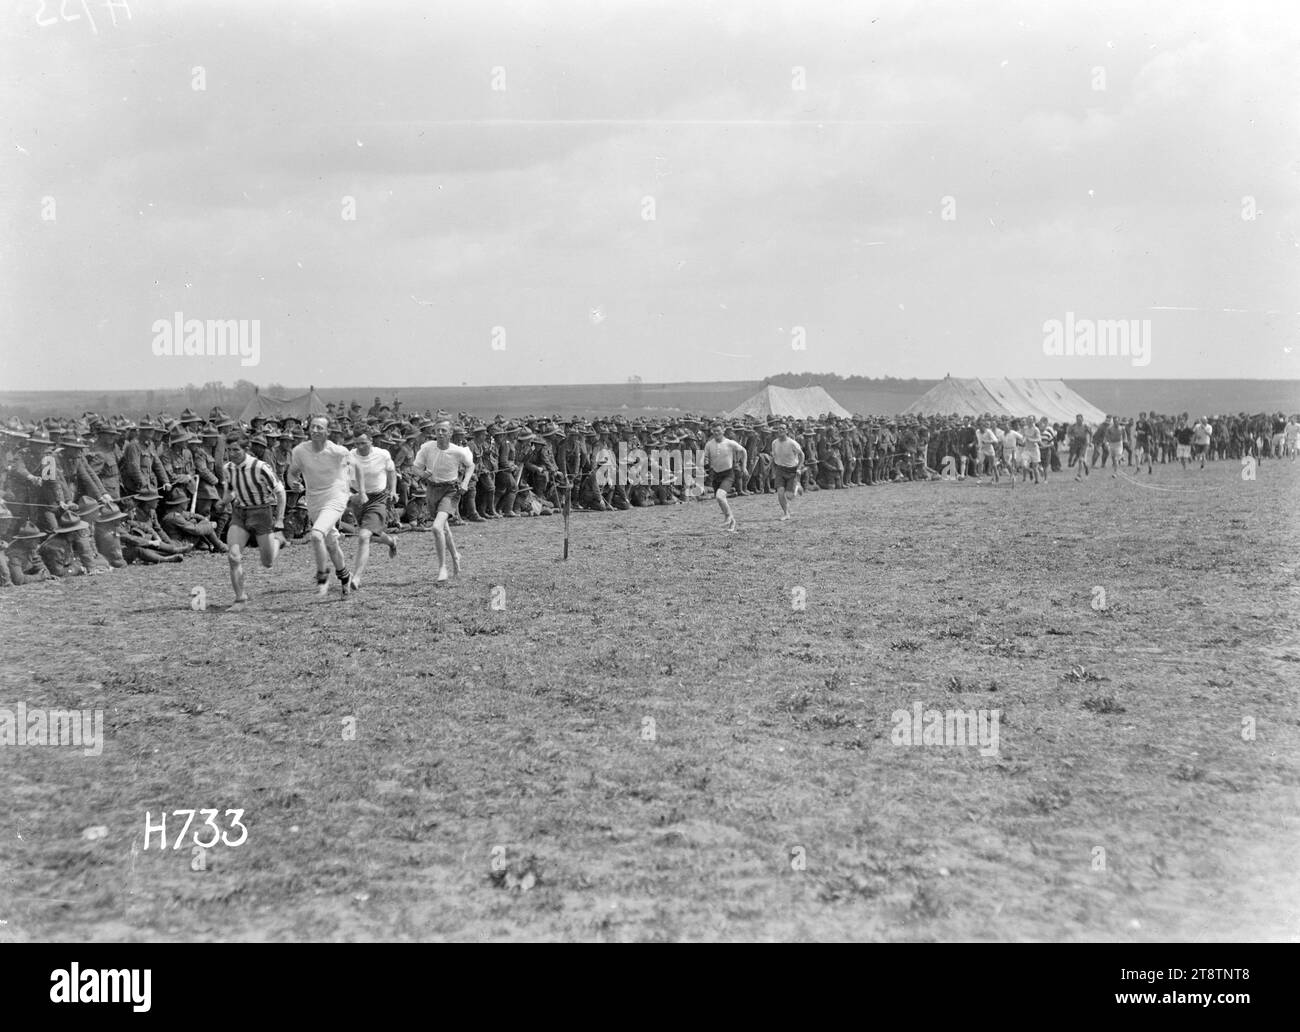 Soldaten, die an einem Meile-Rennen teilnehmen, Authie, Frankreich, Soldaten, die an einem Meile-Rennen teilnehmen, Authie, Frankreich. Foto am 27. Juli 1918 Stockfoto